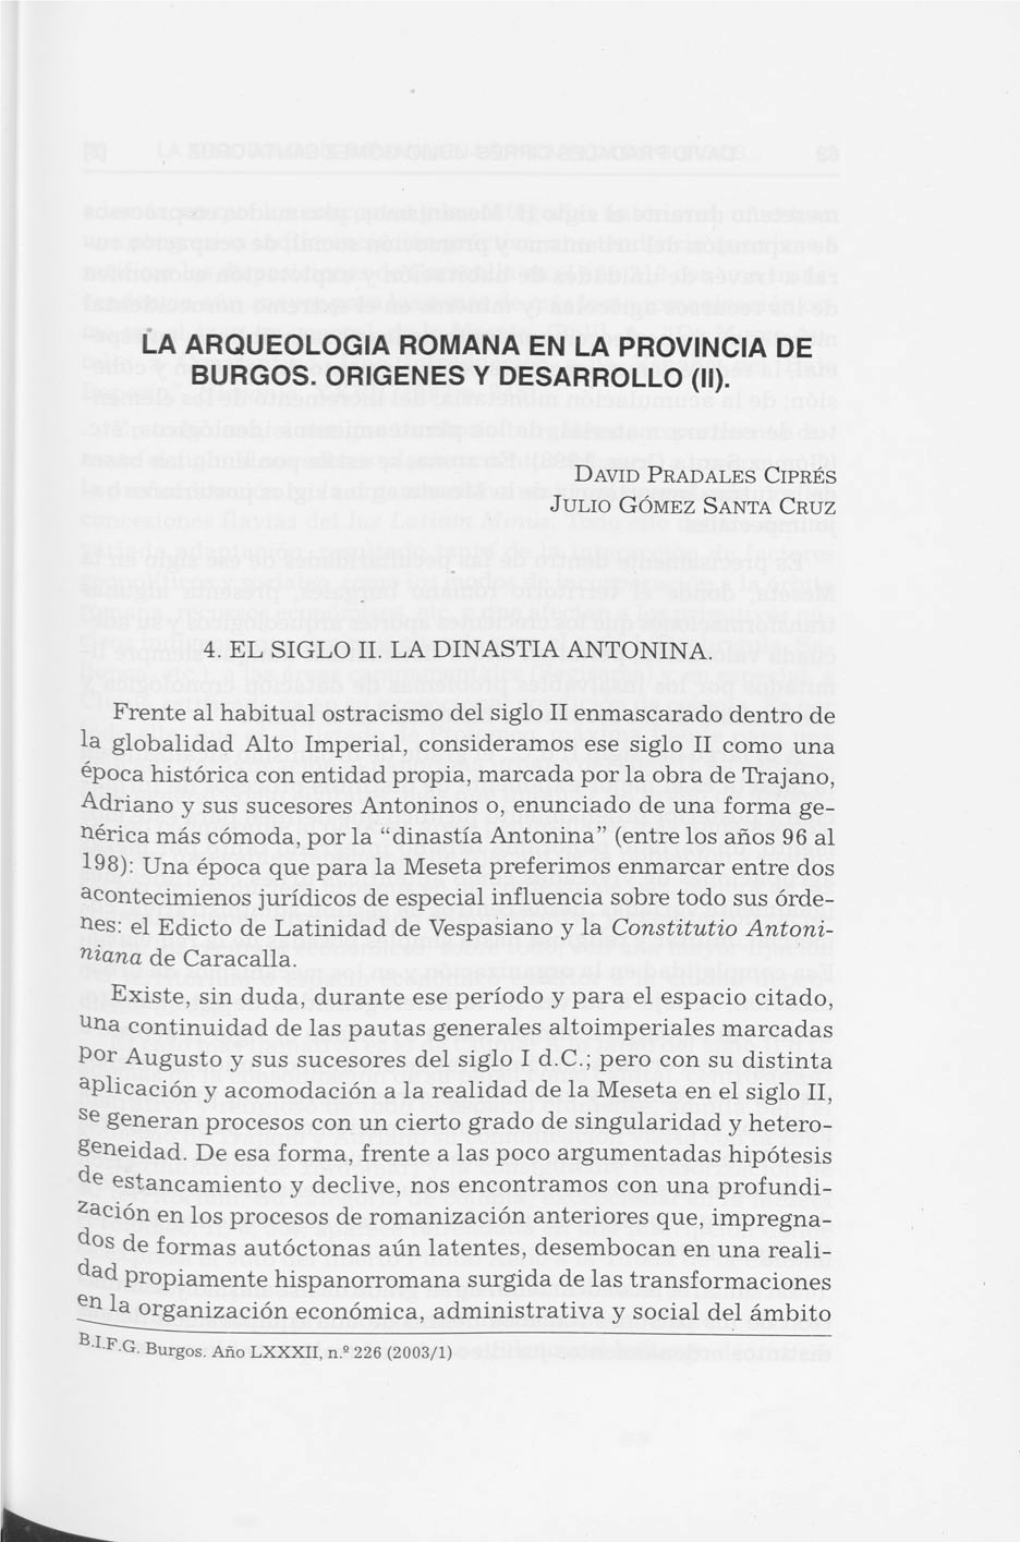 La Arqueologia Romana En La Provincia De Burgos. Origenes Y Desarrollo (Ii)